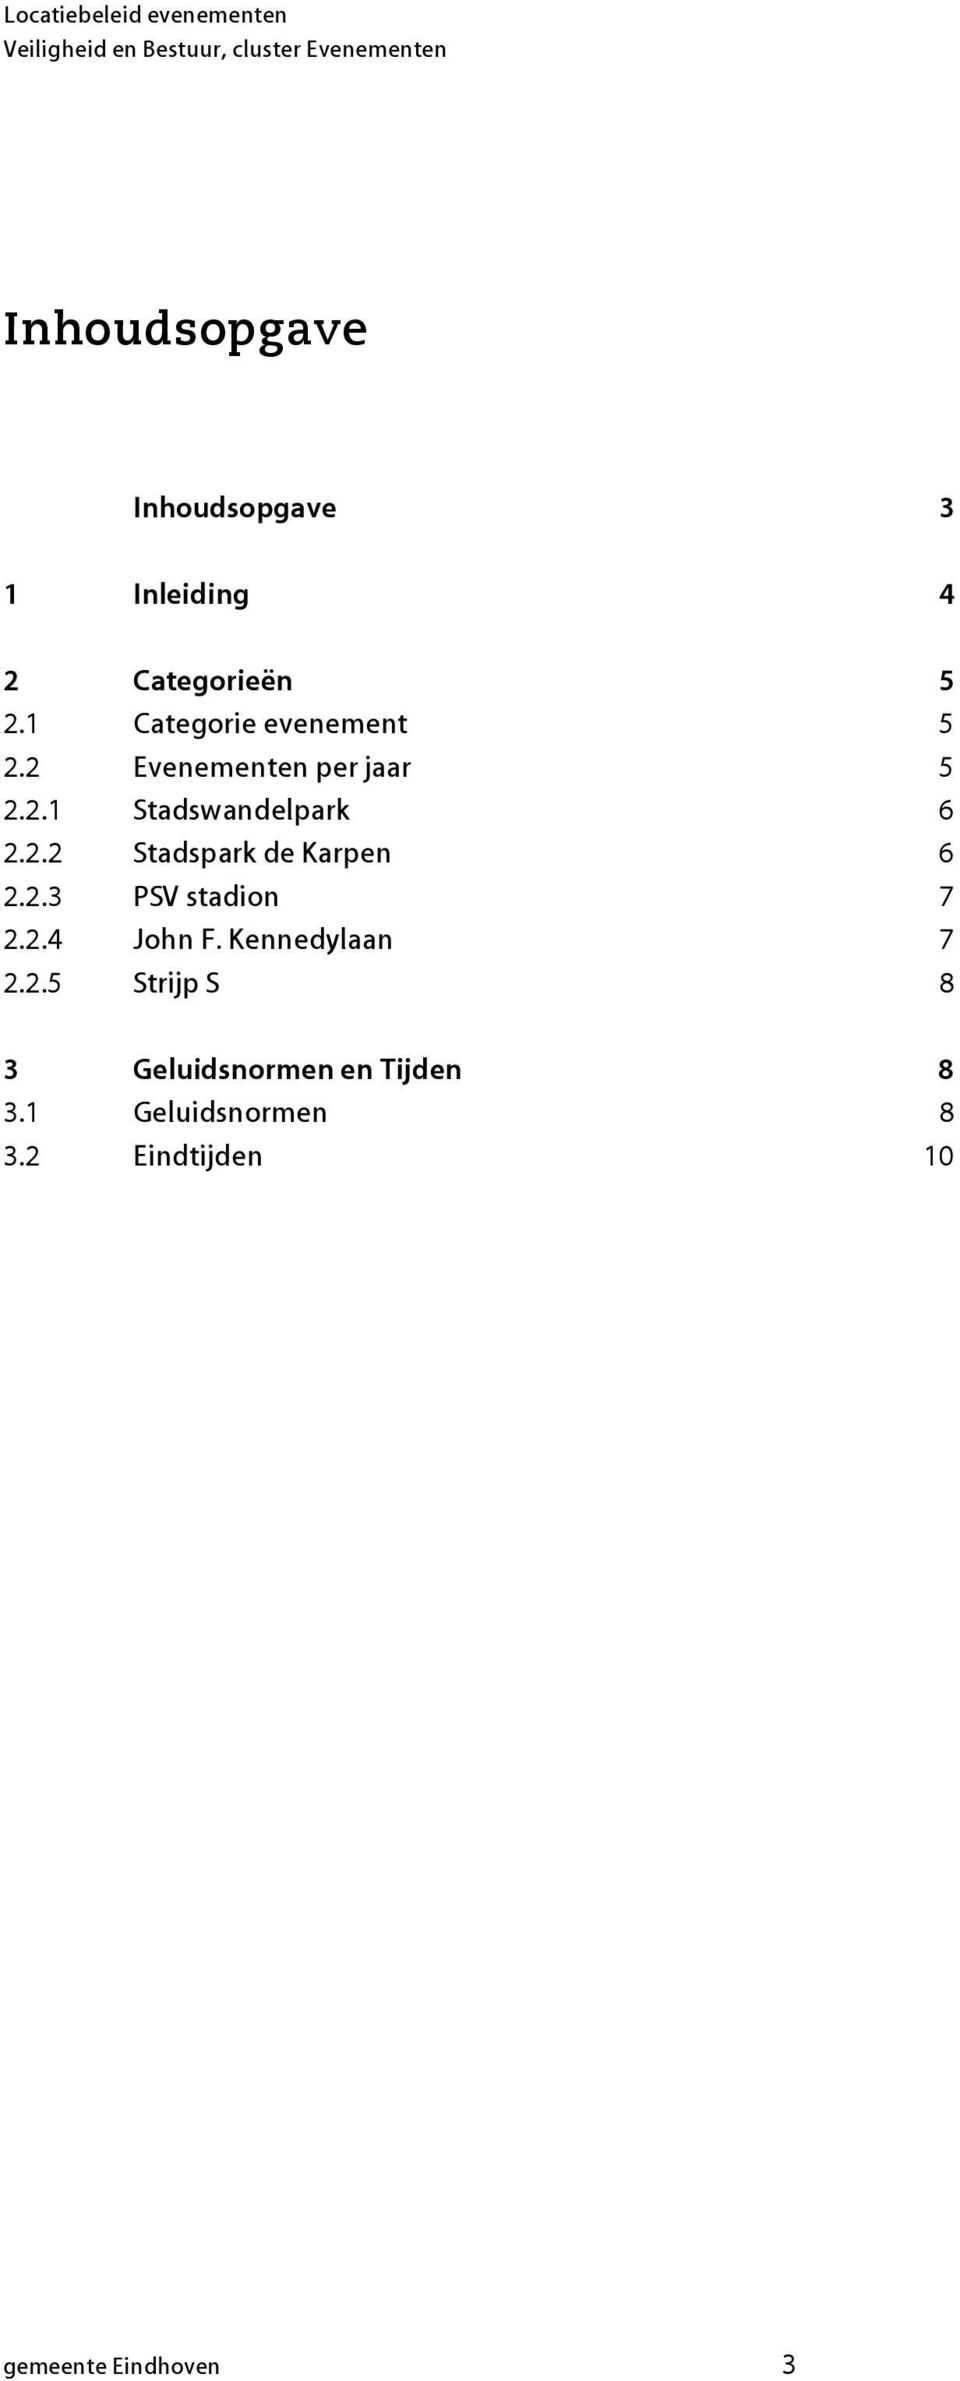 2.3 PSV stadion 7 2.2.4 John F. Kennedylaan 7 2.2.5 Strijp S 8 3 Geluidsnormen en Tijden 8 3.